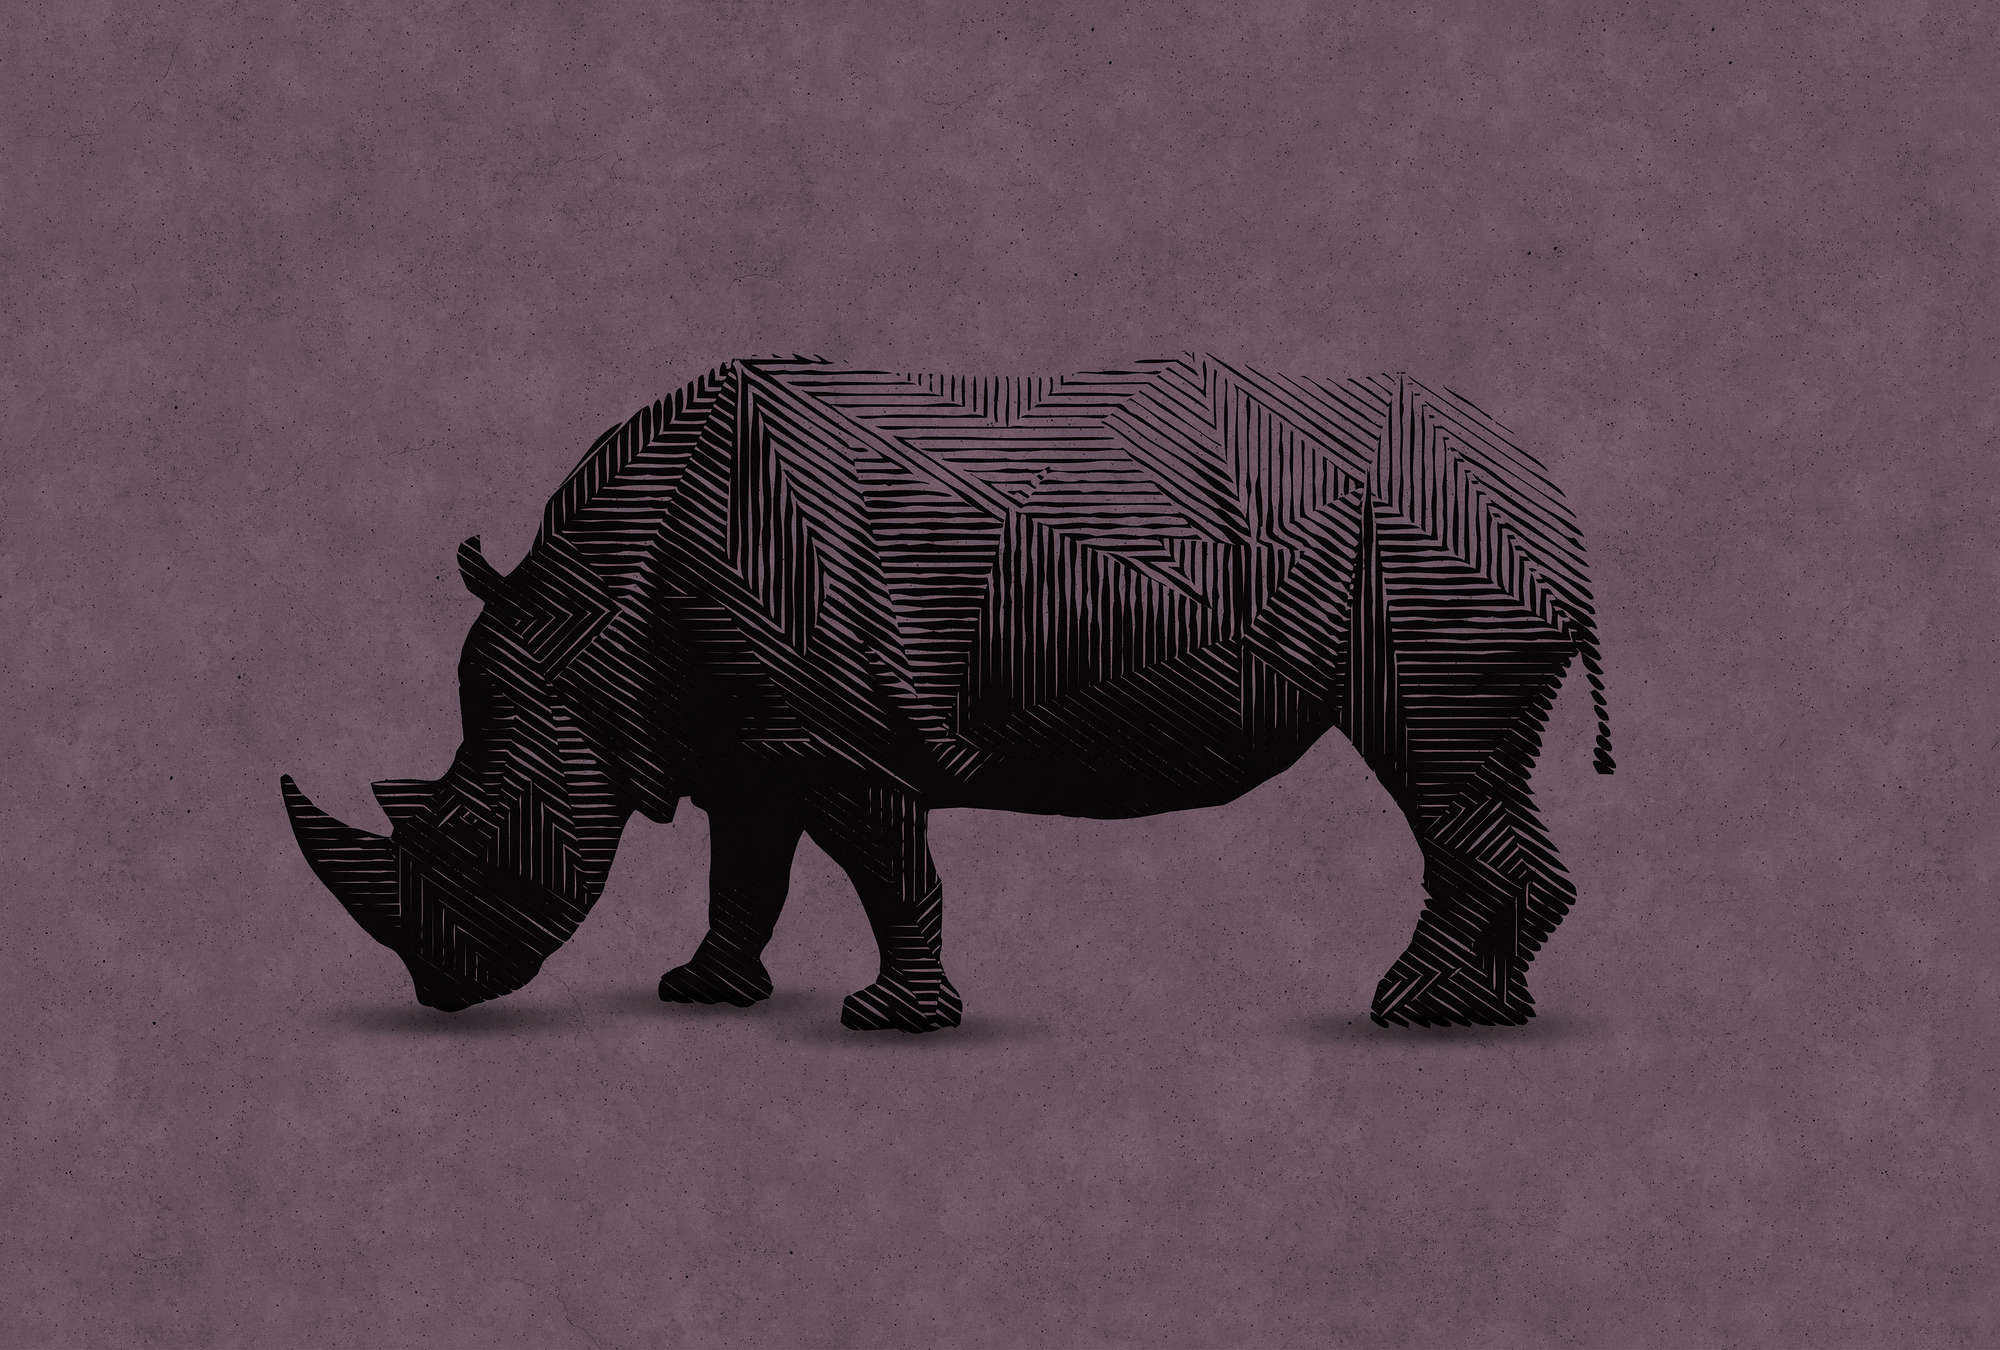             Papel pintado moderno con rinoceronte en estilo gráfico
        